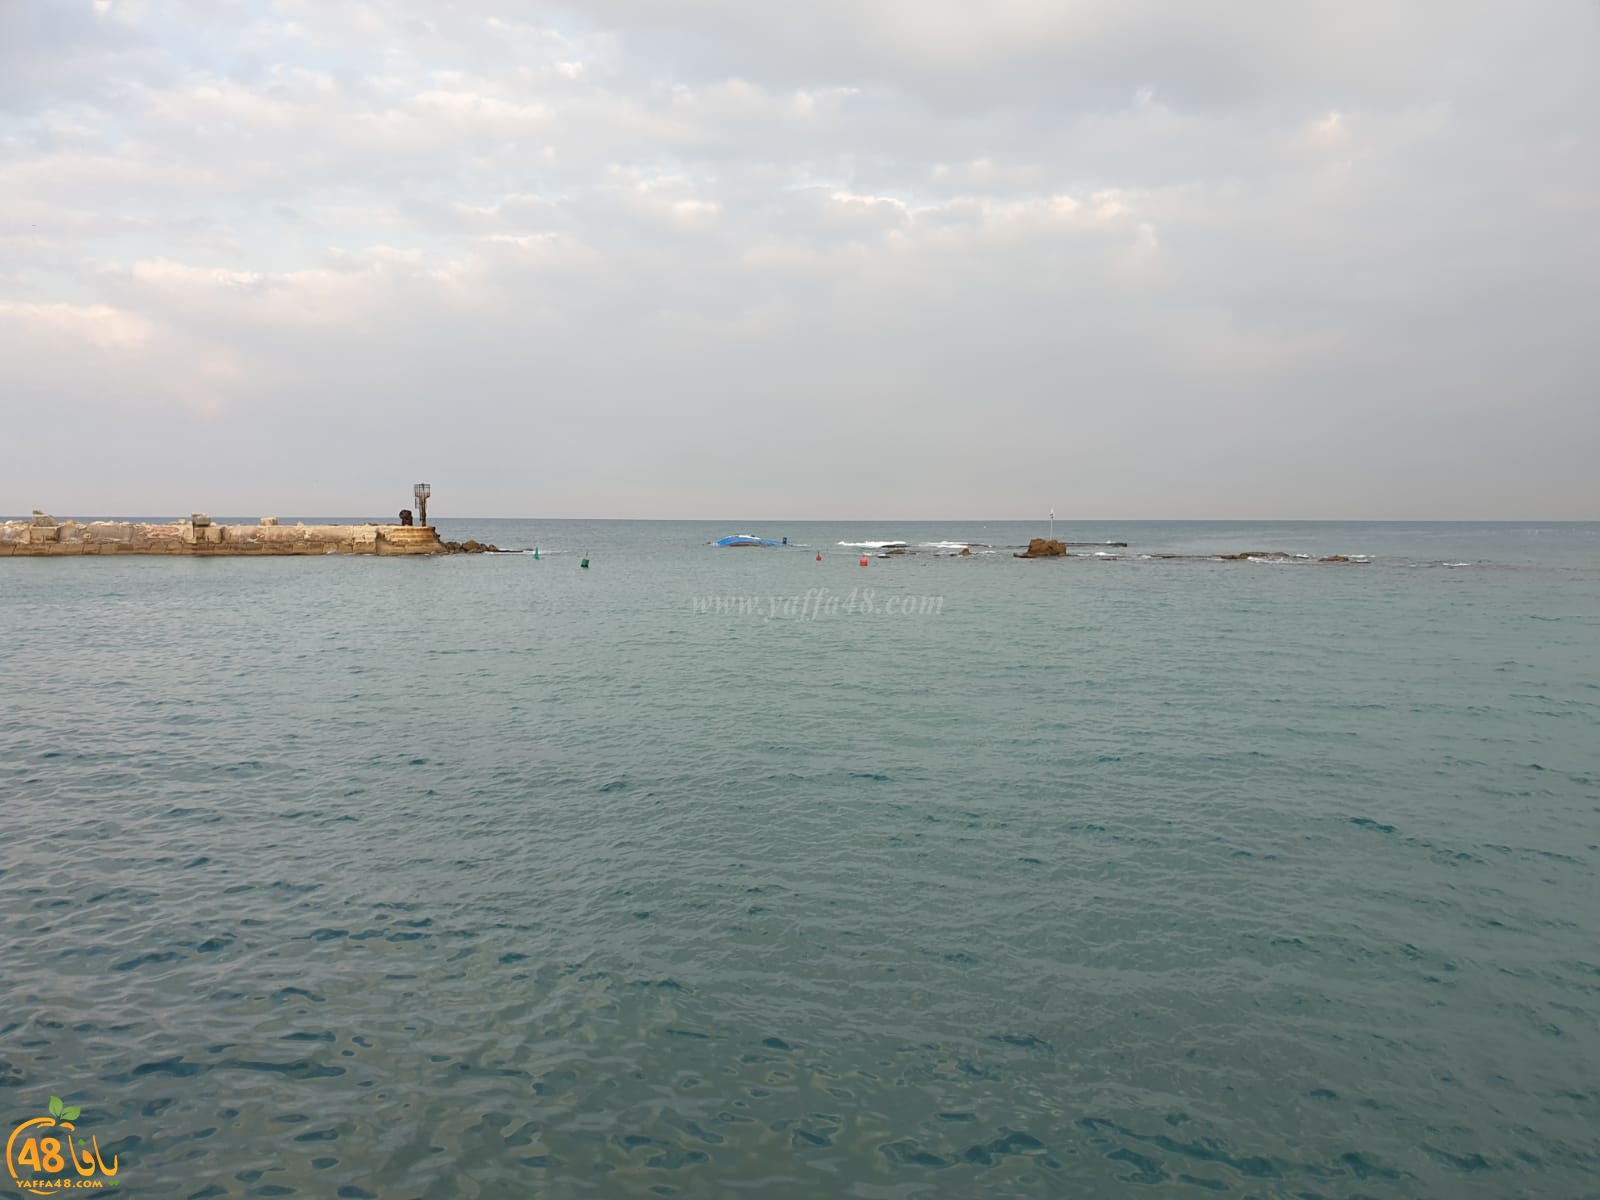  فيديو: المركب ما زال عالقاً في الصخور بمدخل ميناء يافا ومحاولات مستمرة لسحبه